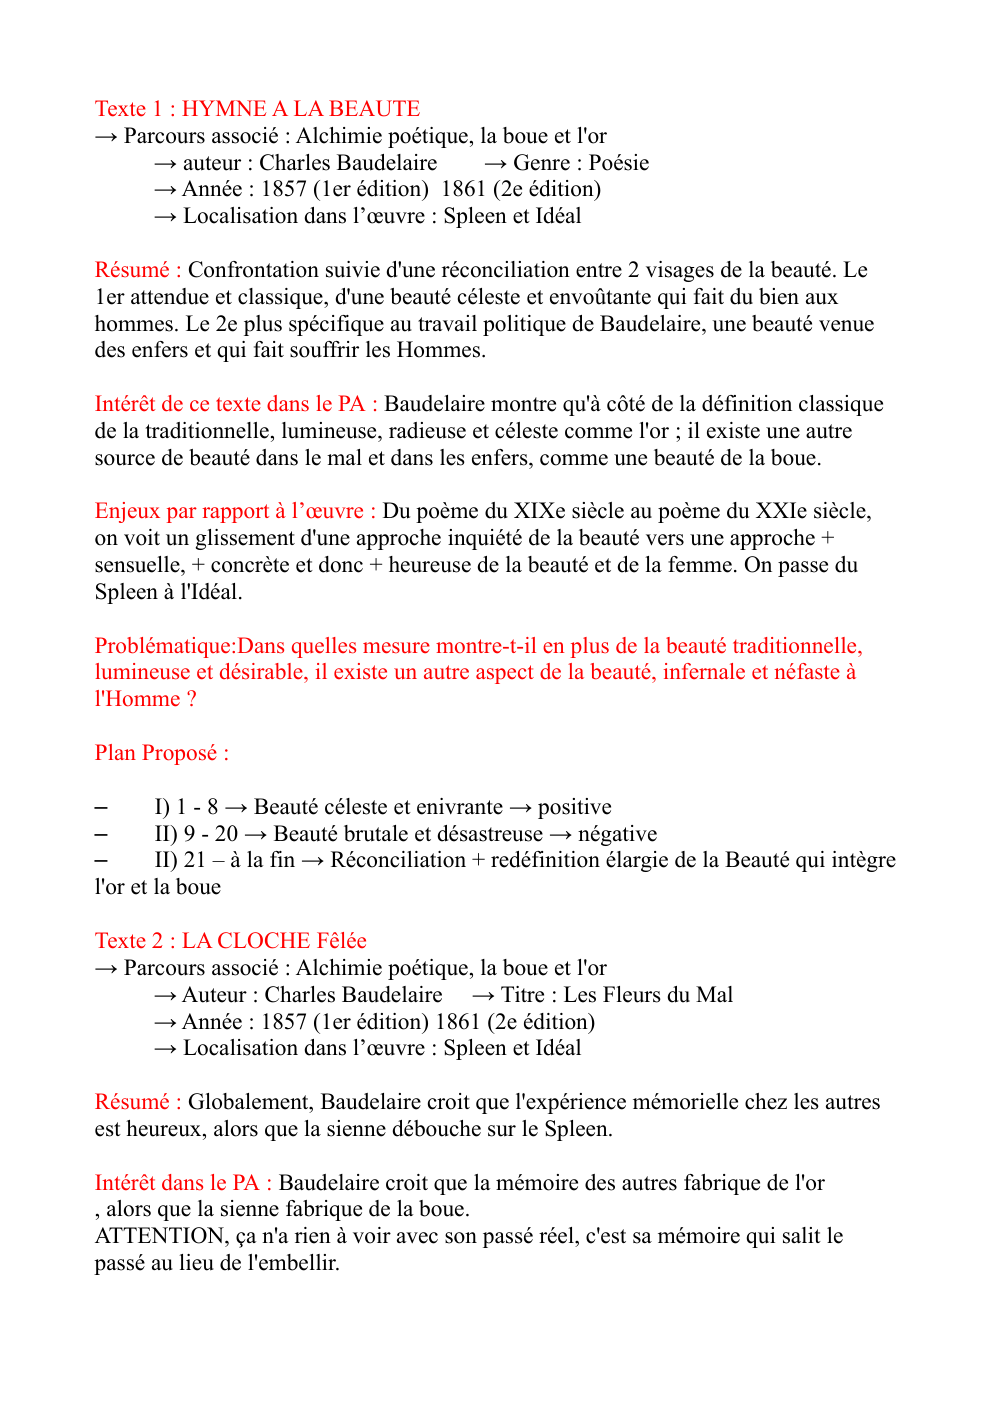 Prévisualisation du document fiche de révision français oral français